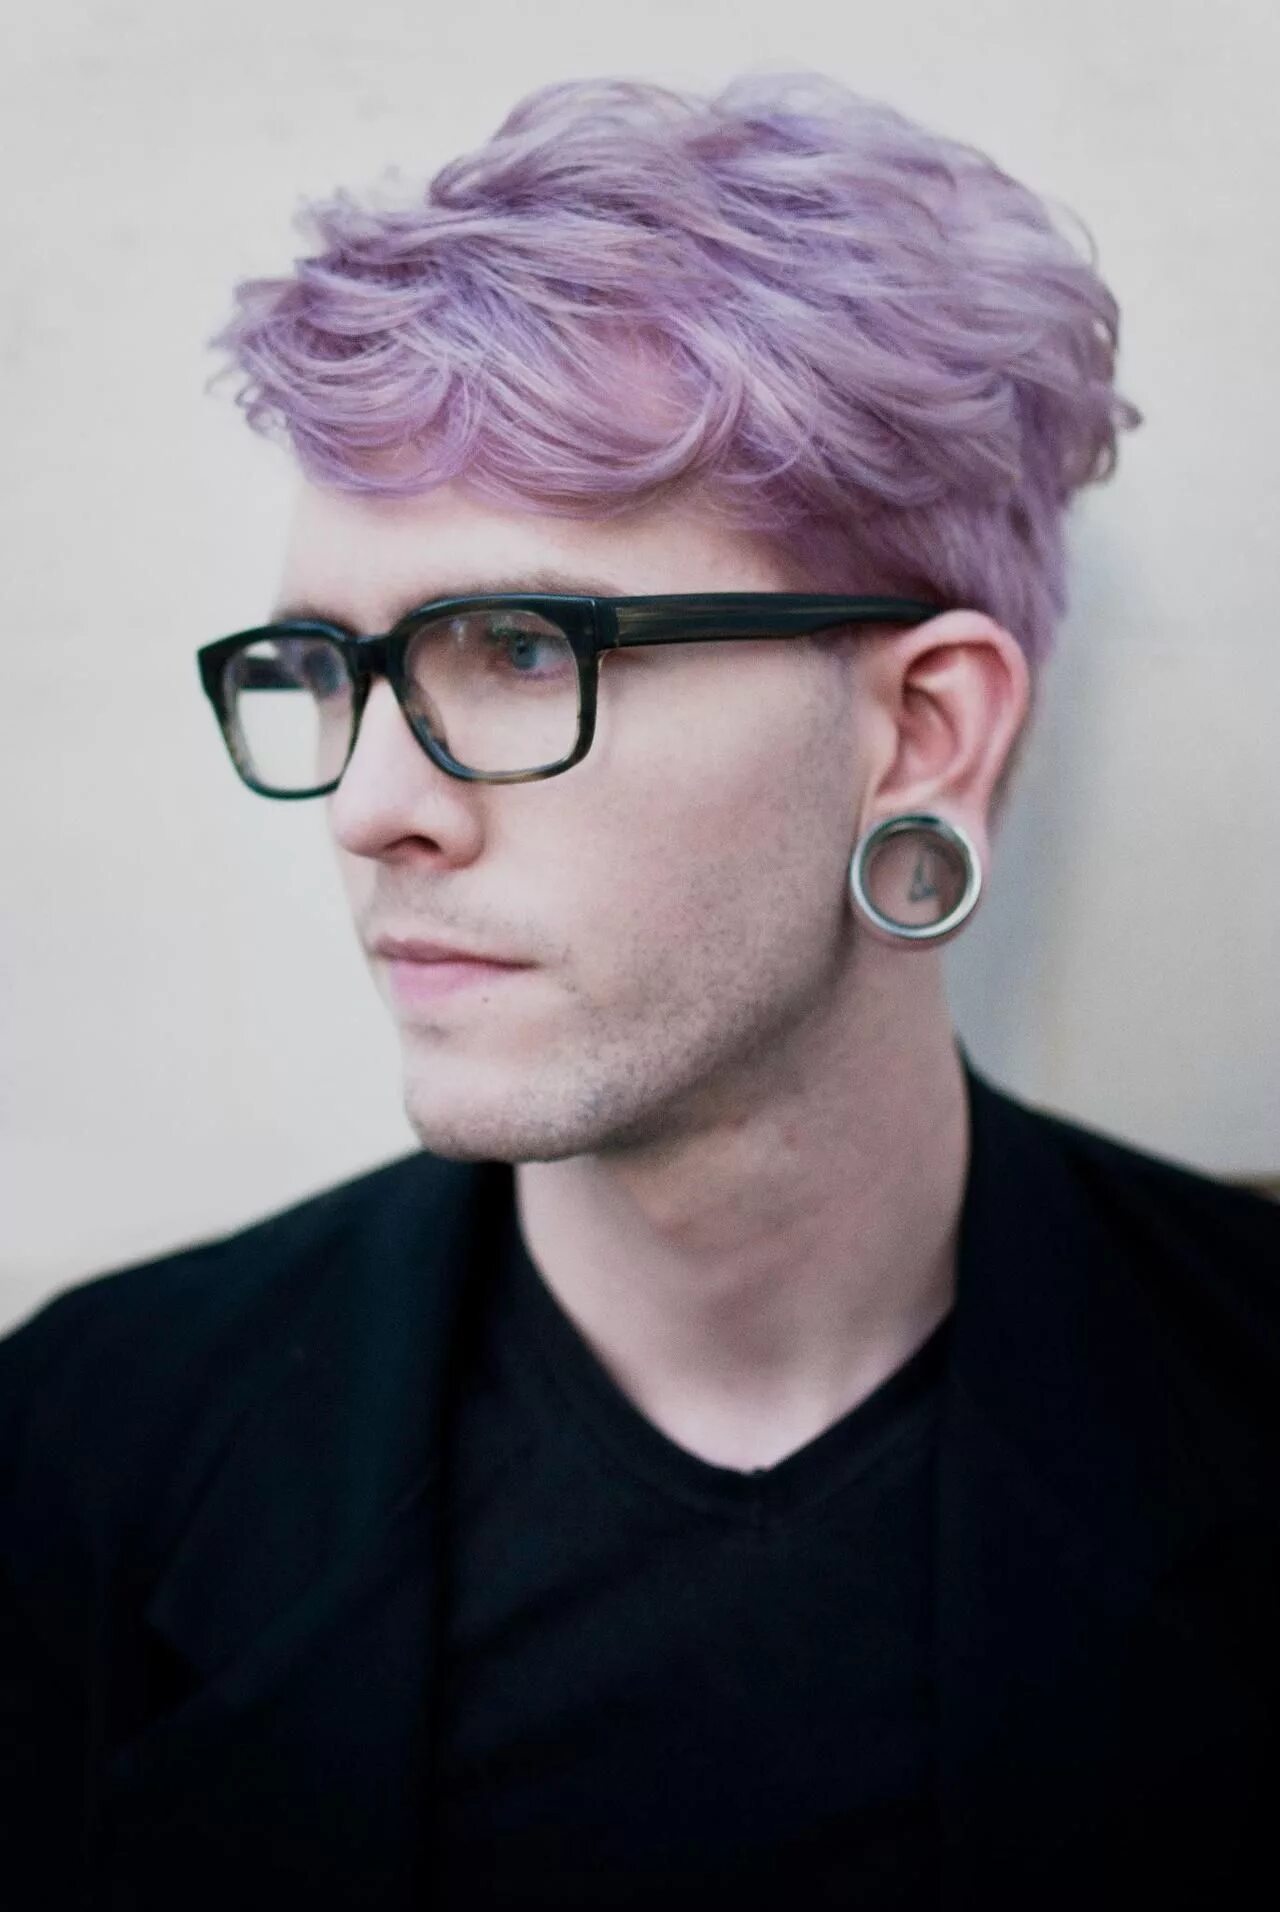 Фиолетовый мужской цвет. Парень с фиолетовыми волосами. Цветные волосы у парней. Фиолетовые волосы у мужчин. Мужская прическа с фиолетовыми волосами.